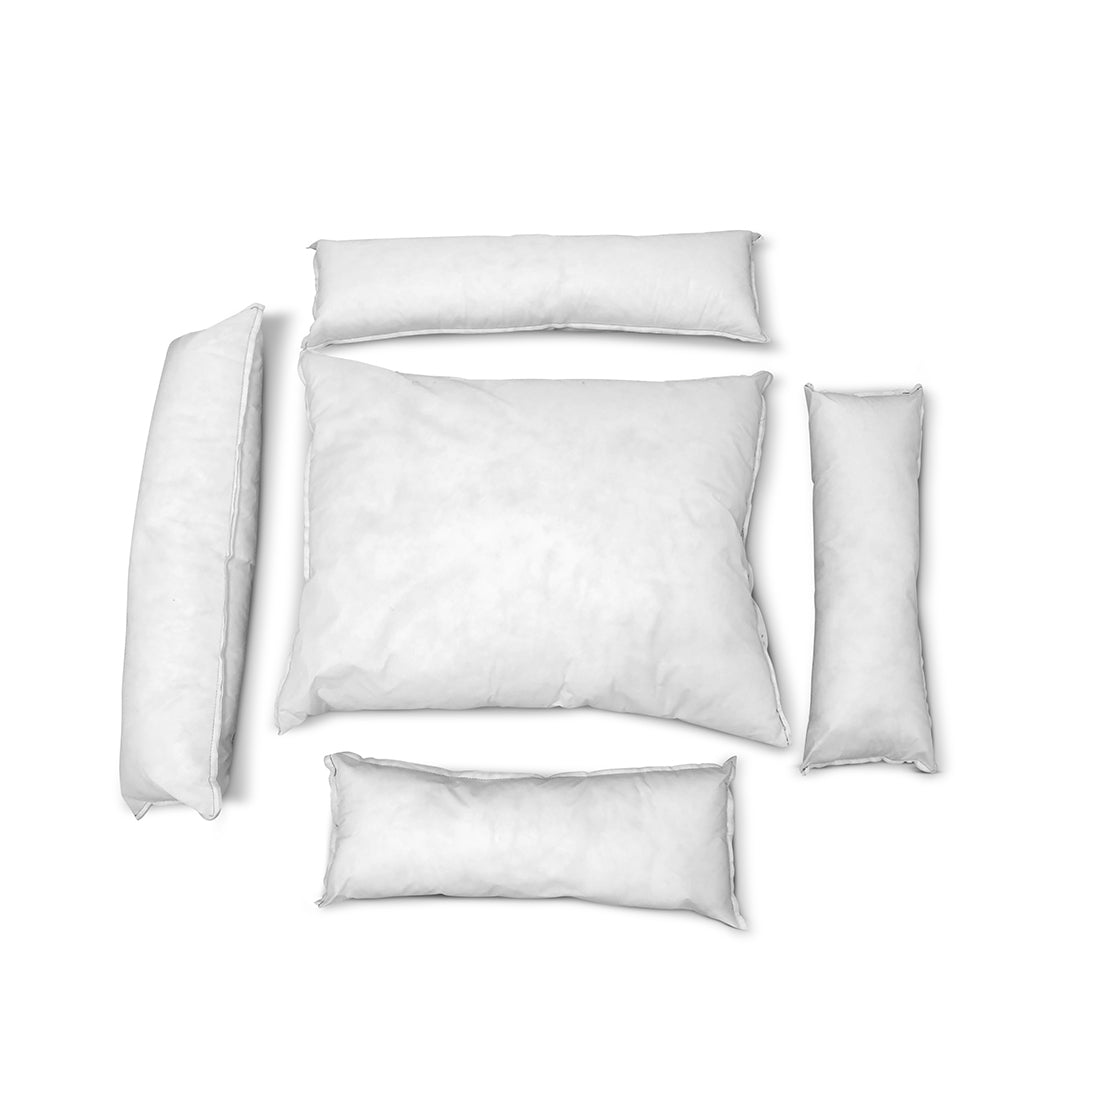 titan citadel replacement pillows